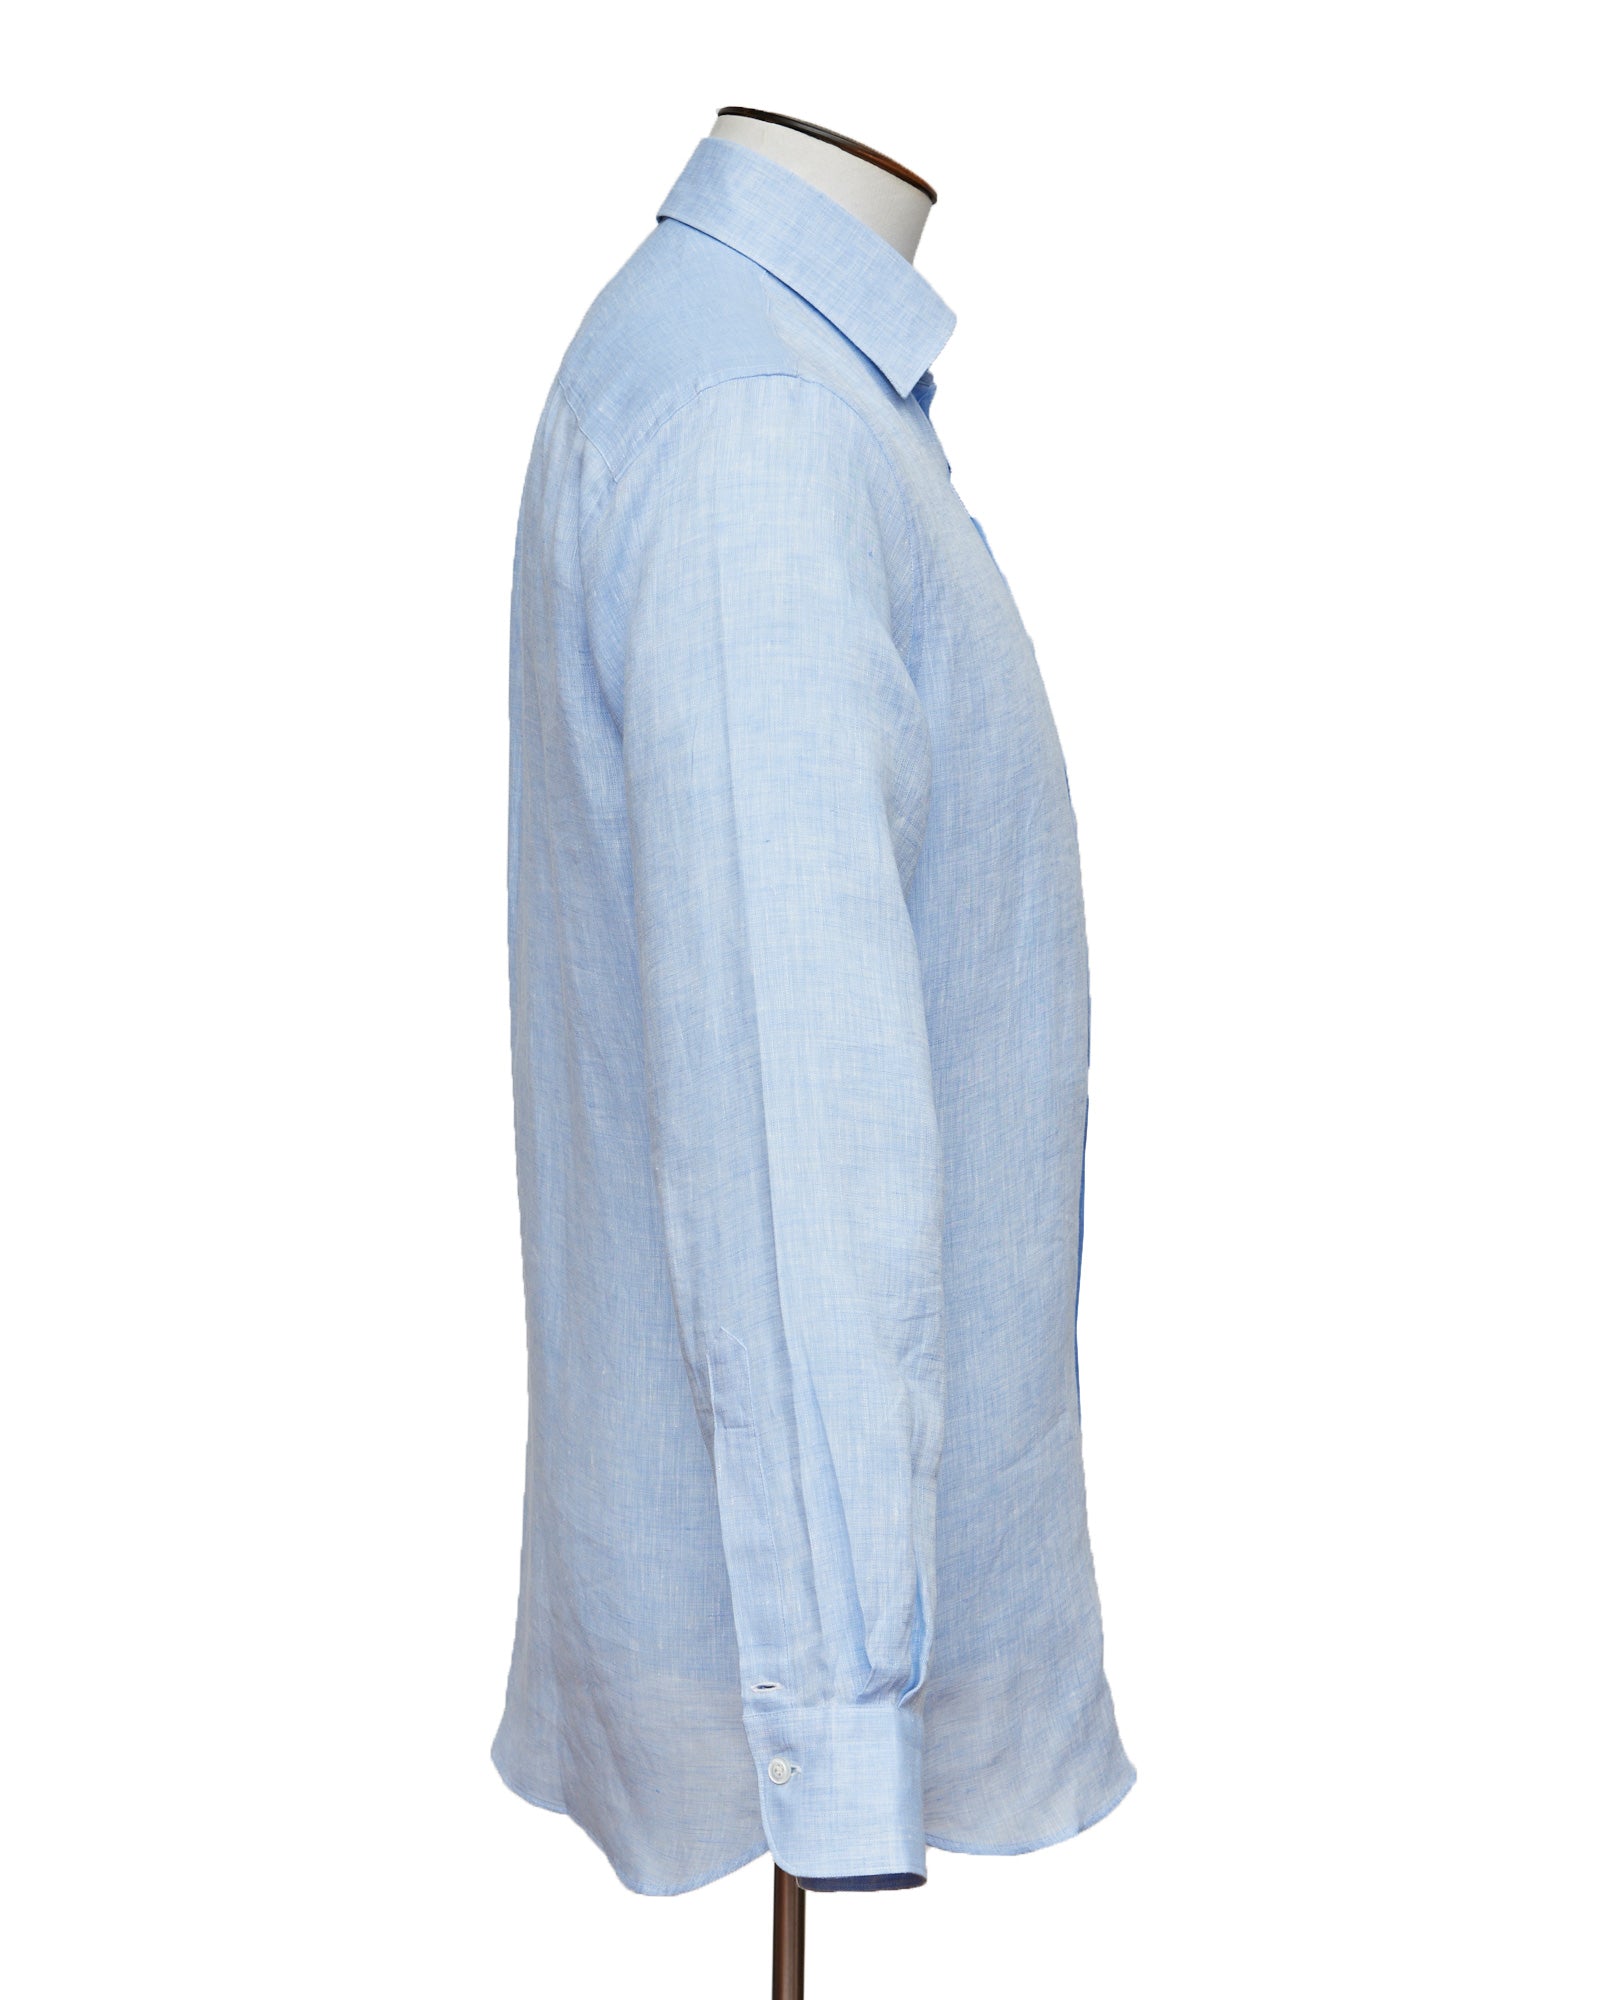 Crest Shirt - Cornflower Blue Linen